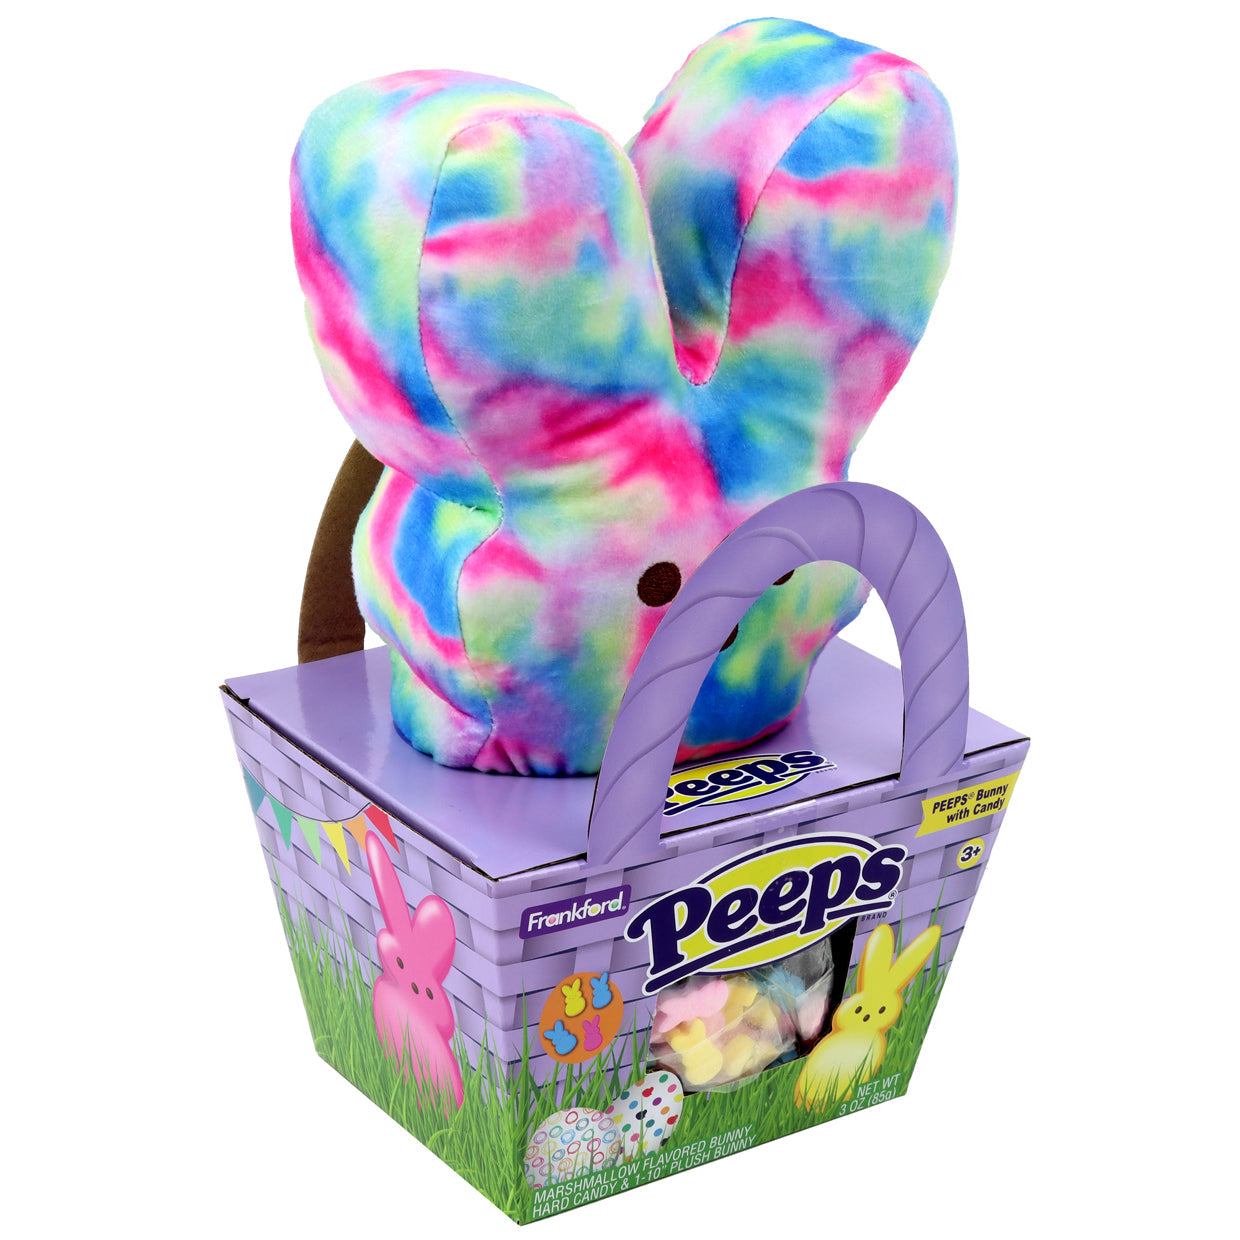 angle of purple basket basket  and tie dye bunny plush gift set